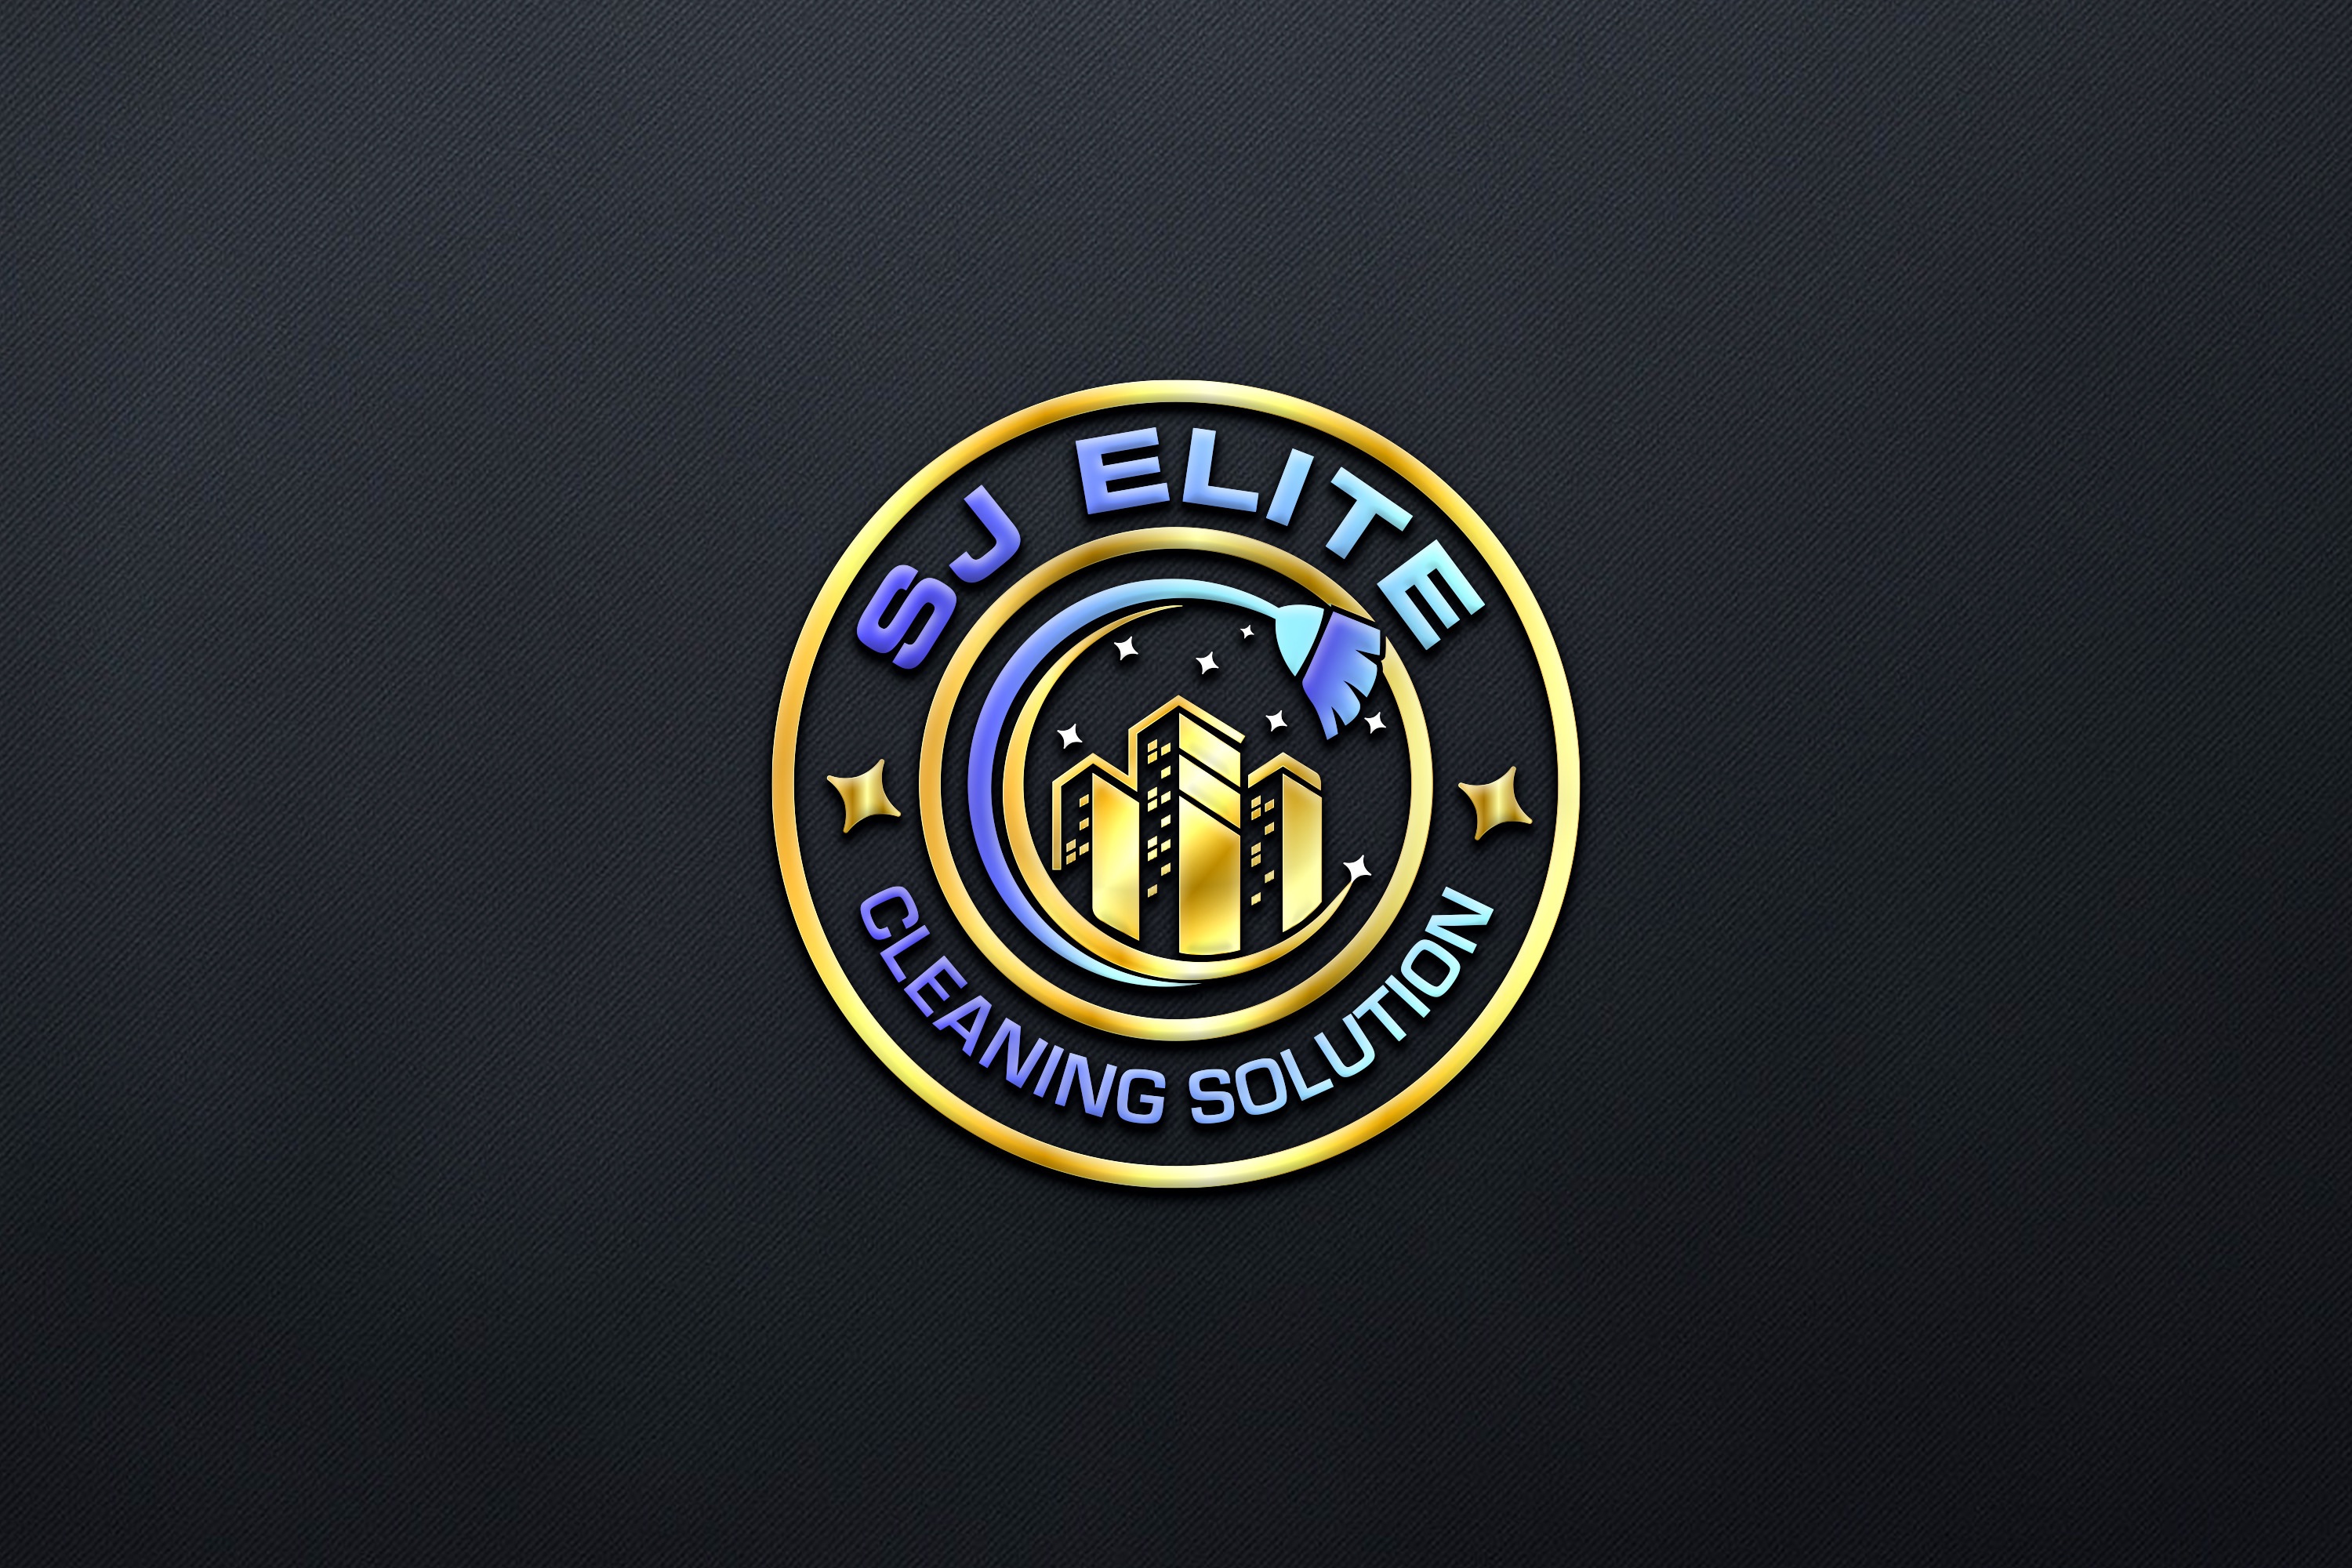 SJ Elite Cleaning Solution Logo